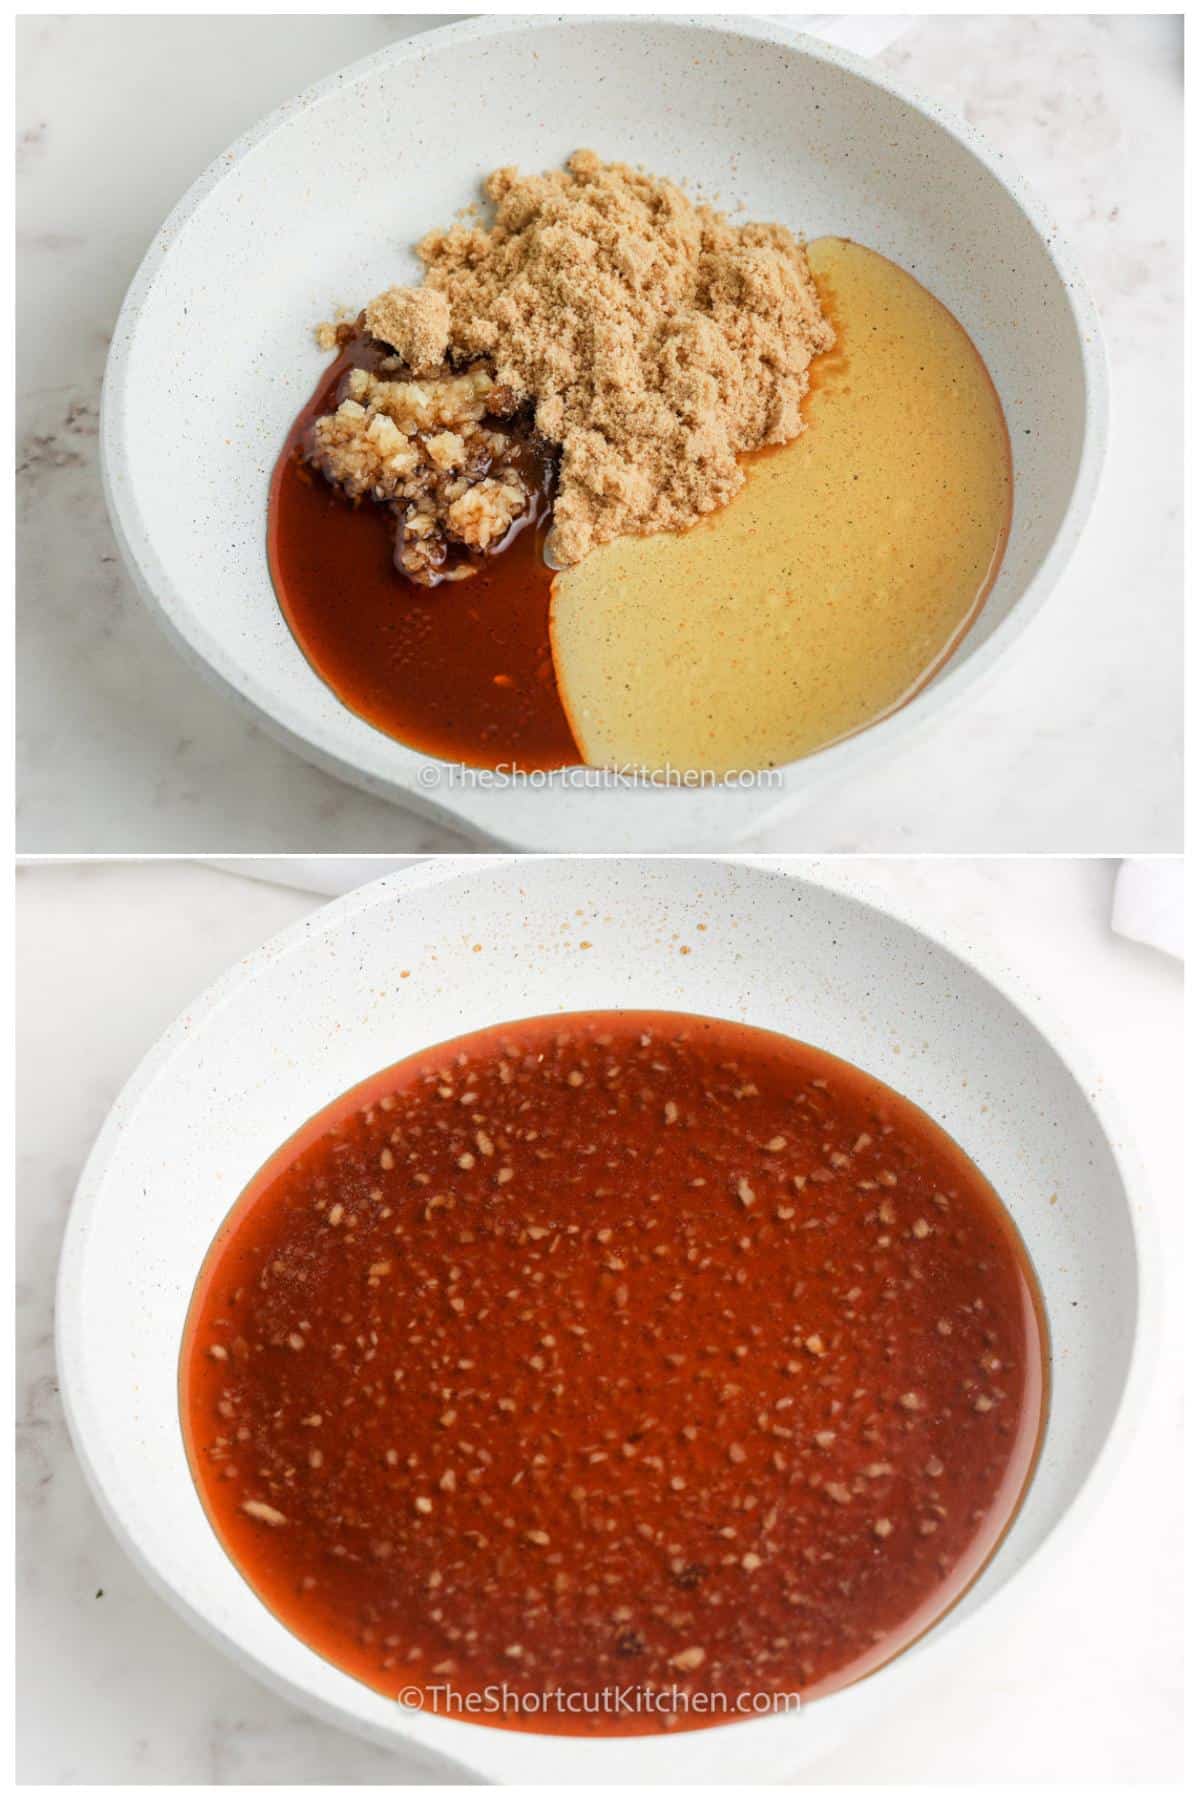 process of mixing ingredients to make Homemade Honey Garlic Sauce